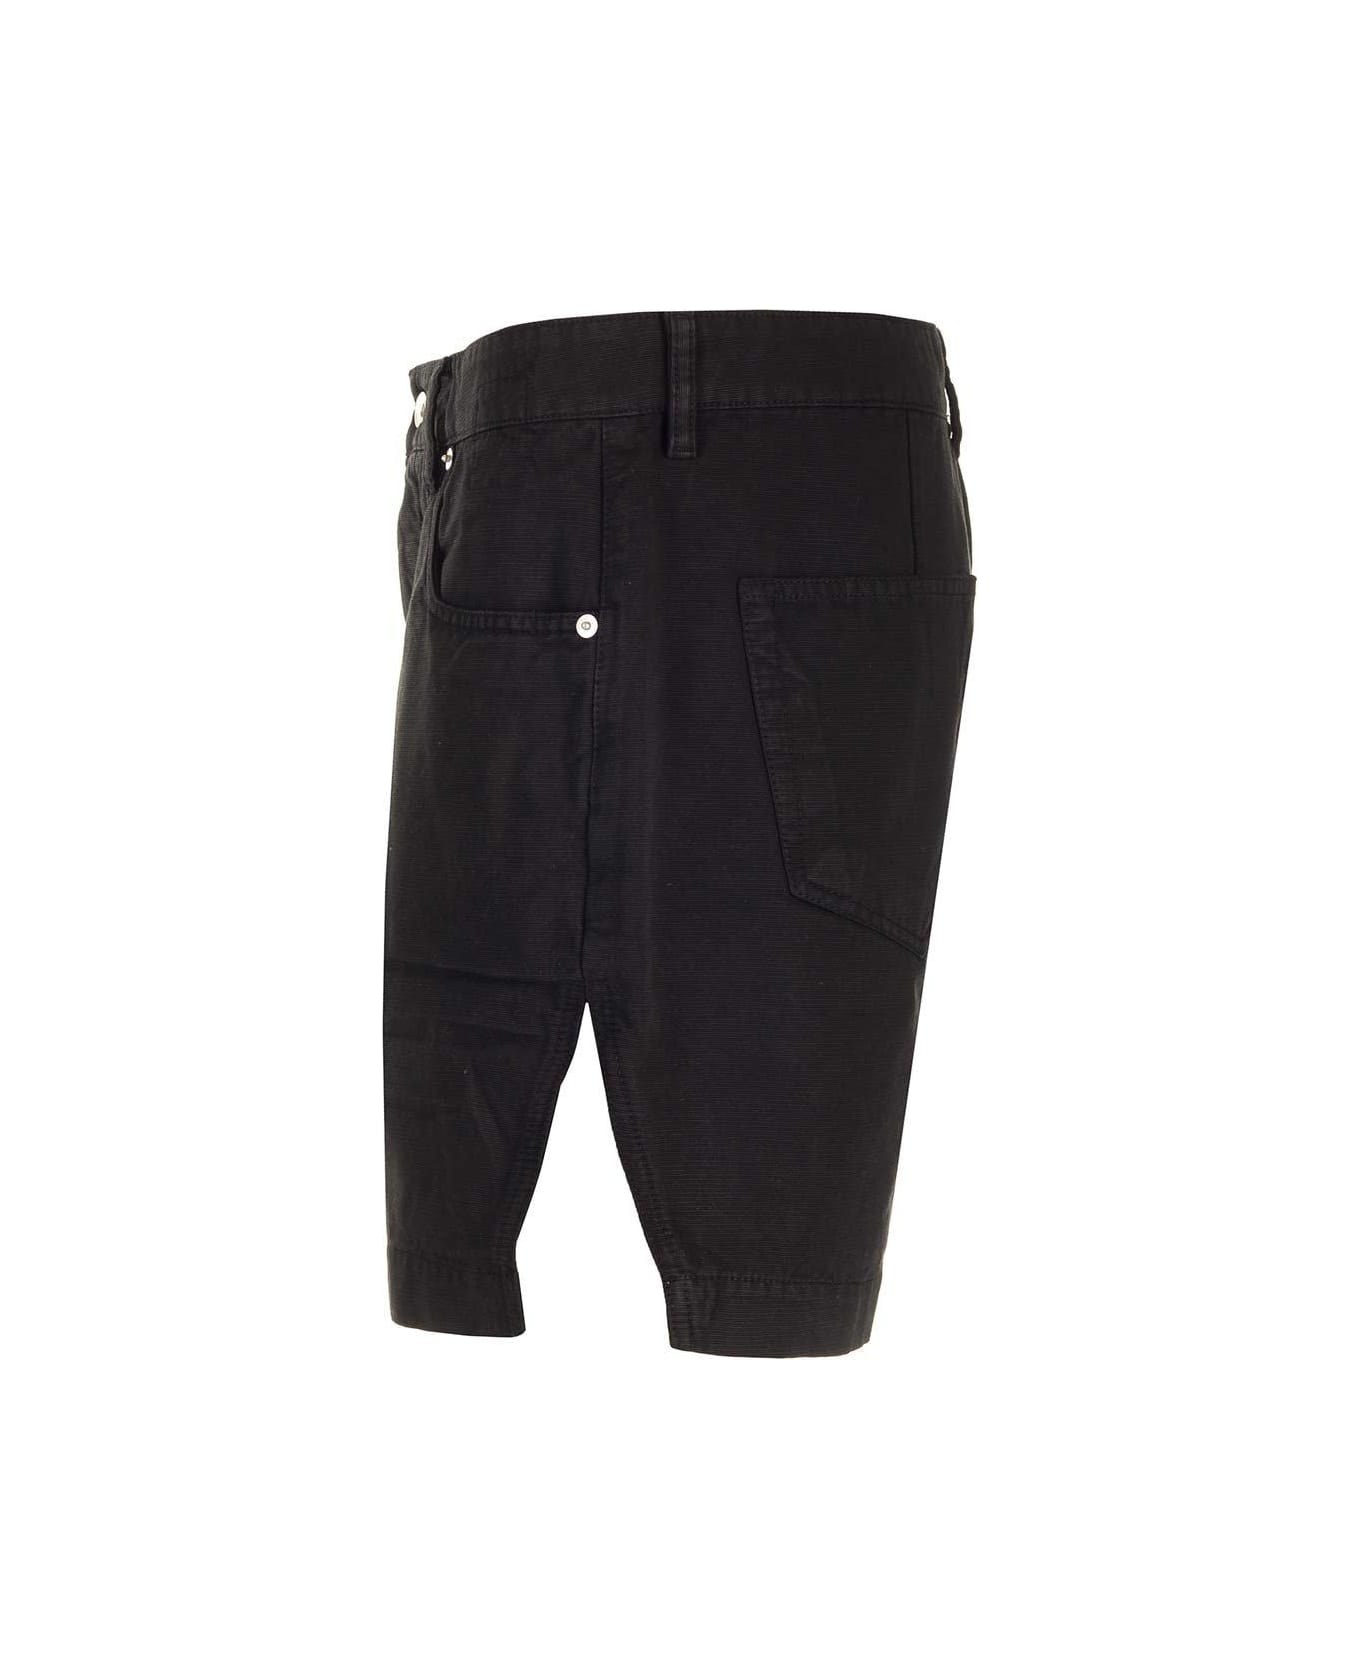 DRKSHDW Knee-length Shorts - Black